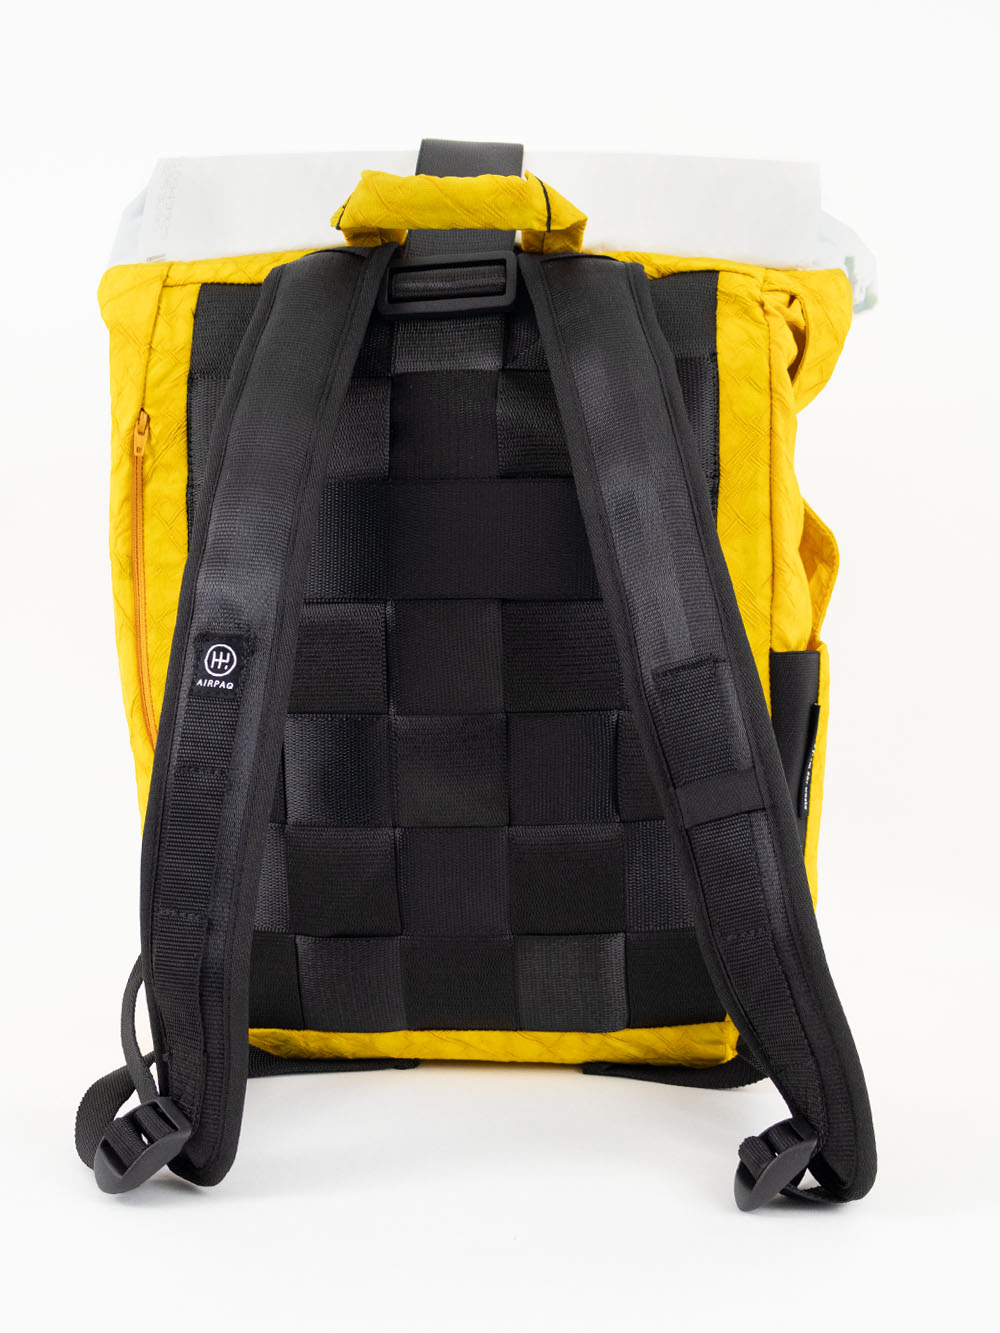 Airpaq sac à dos roll top - couleur jaune/blanc 